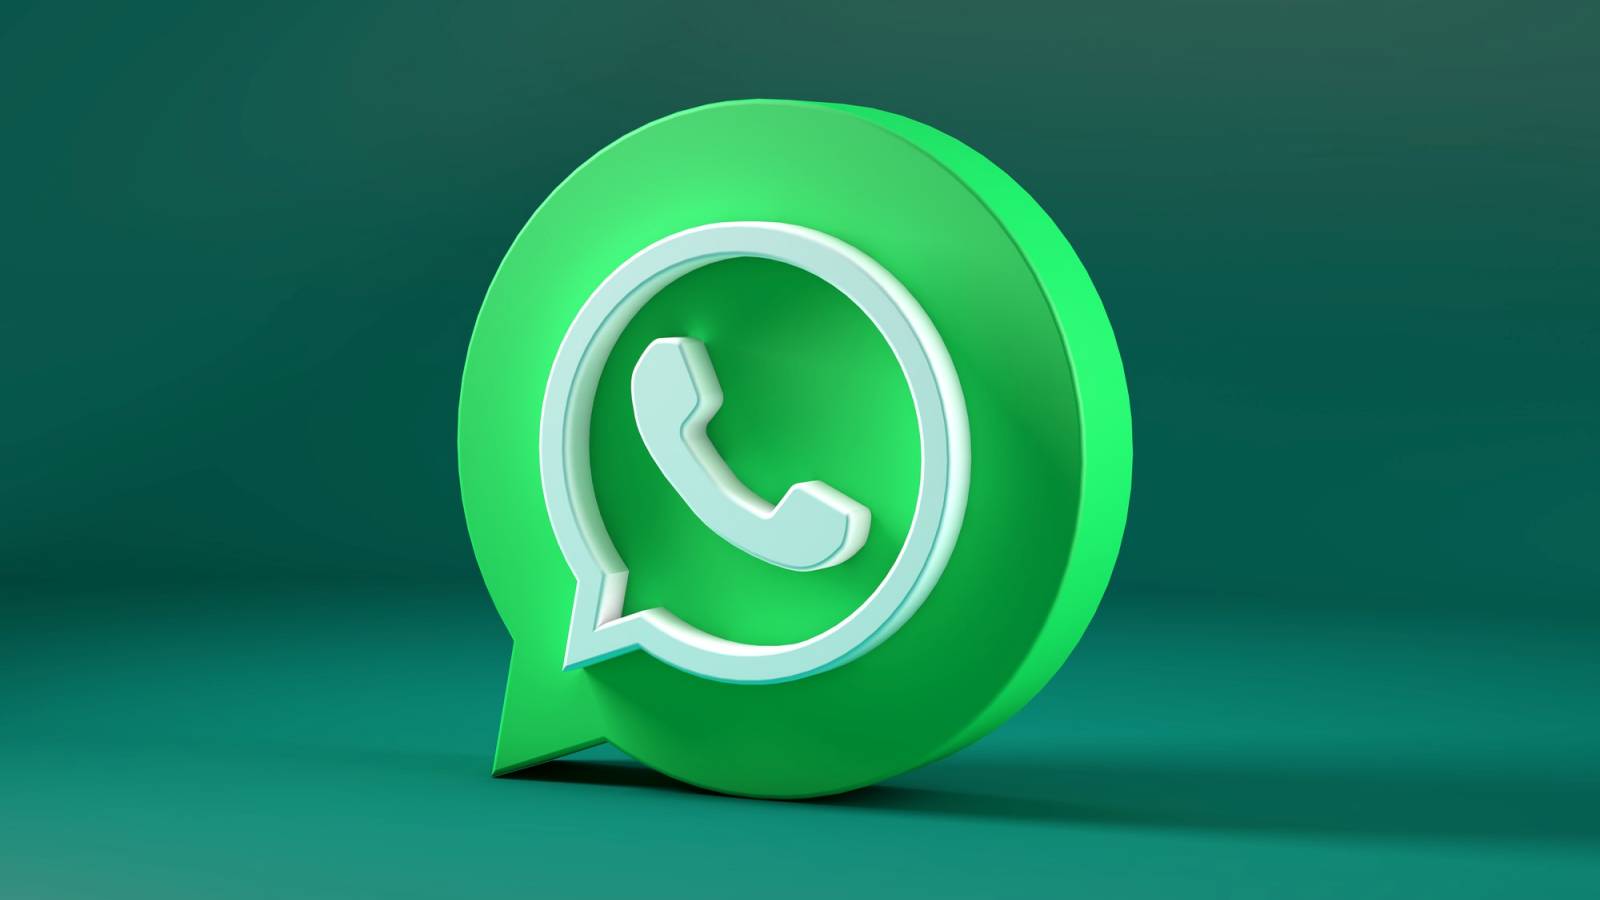 WhatsApp-huomautus